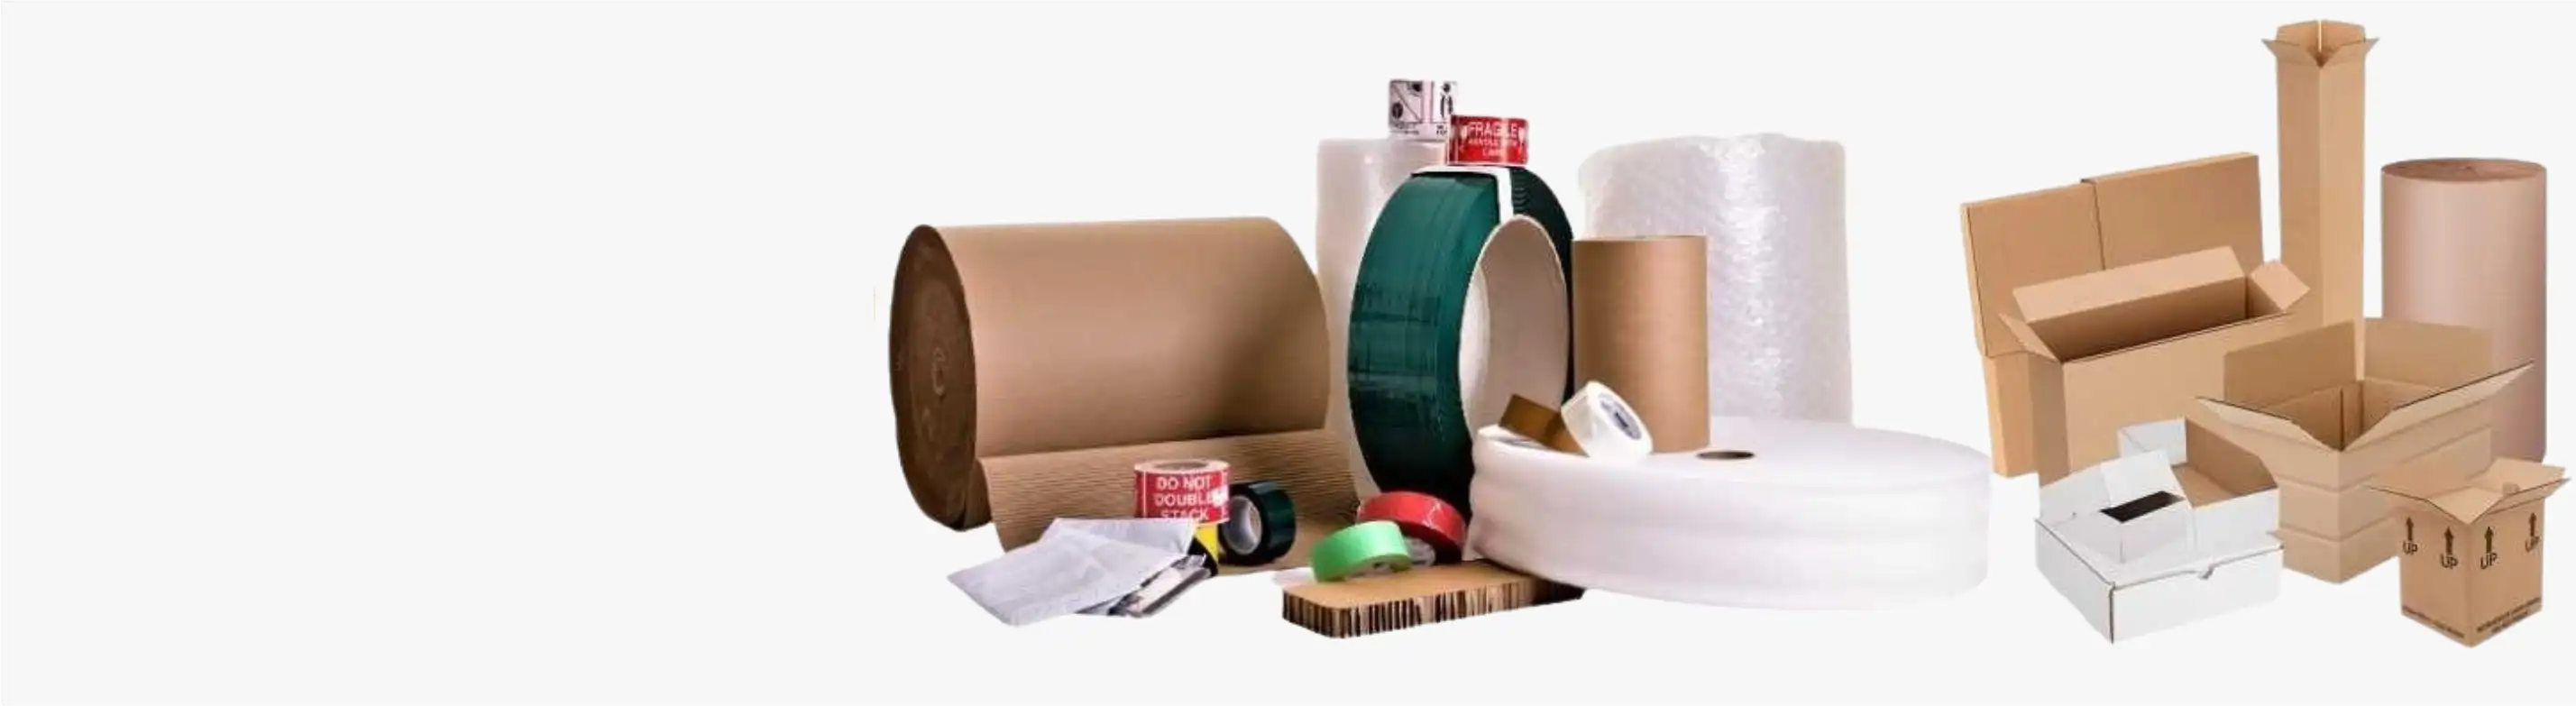 Cardboard Tools Packaging  Cardboard Tools Packaging Wholesale